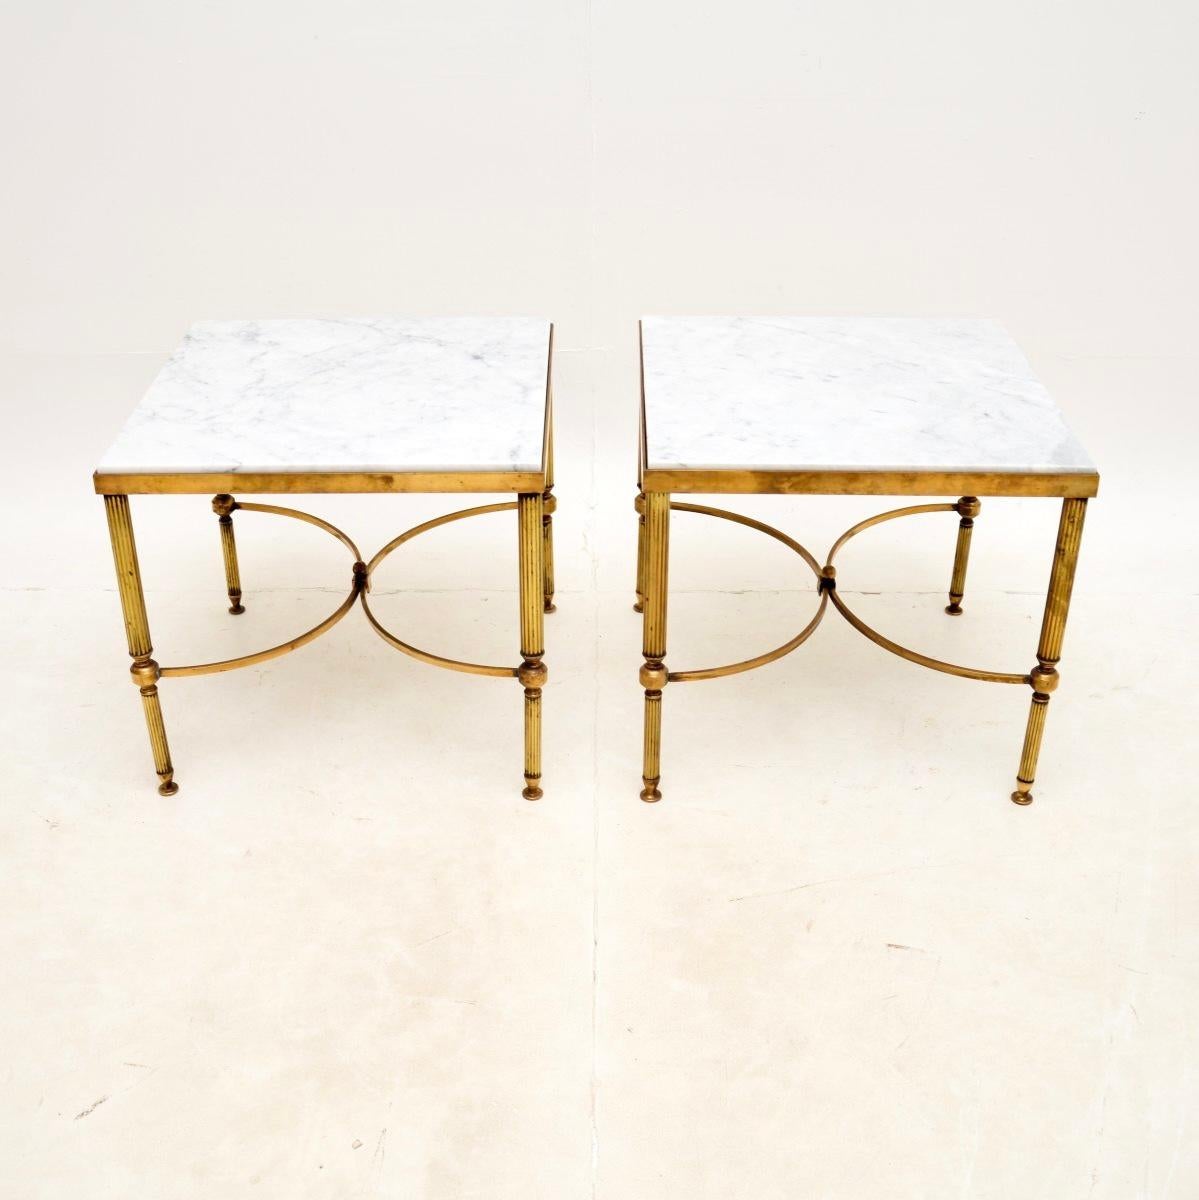 Une excellente paire de tables d'appoint vintage en laiton et marbre. Ils ont été fabriqués en France, et datent des années 1960-70.

La qualité est fantastique, les cadres en laiton sont dotés de beaux châssis incurvés et de pieds cannelés. Ils